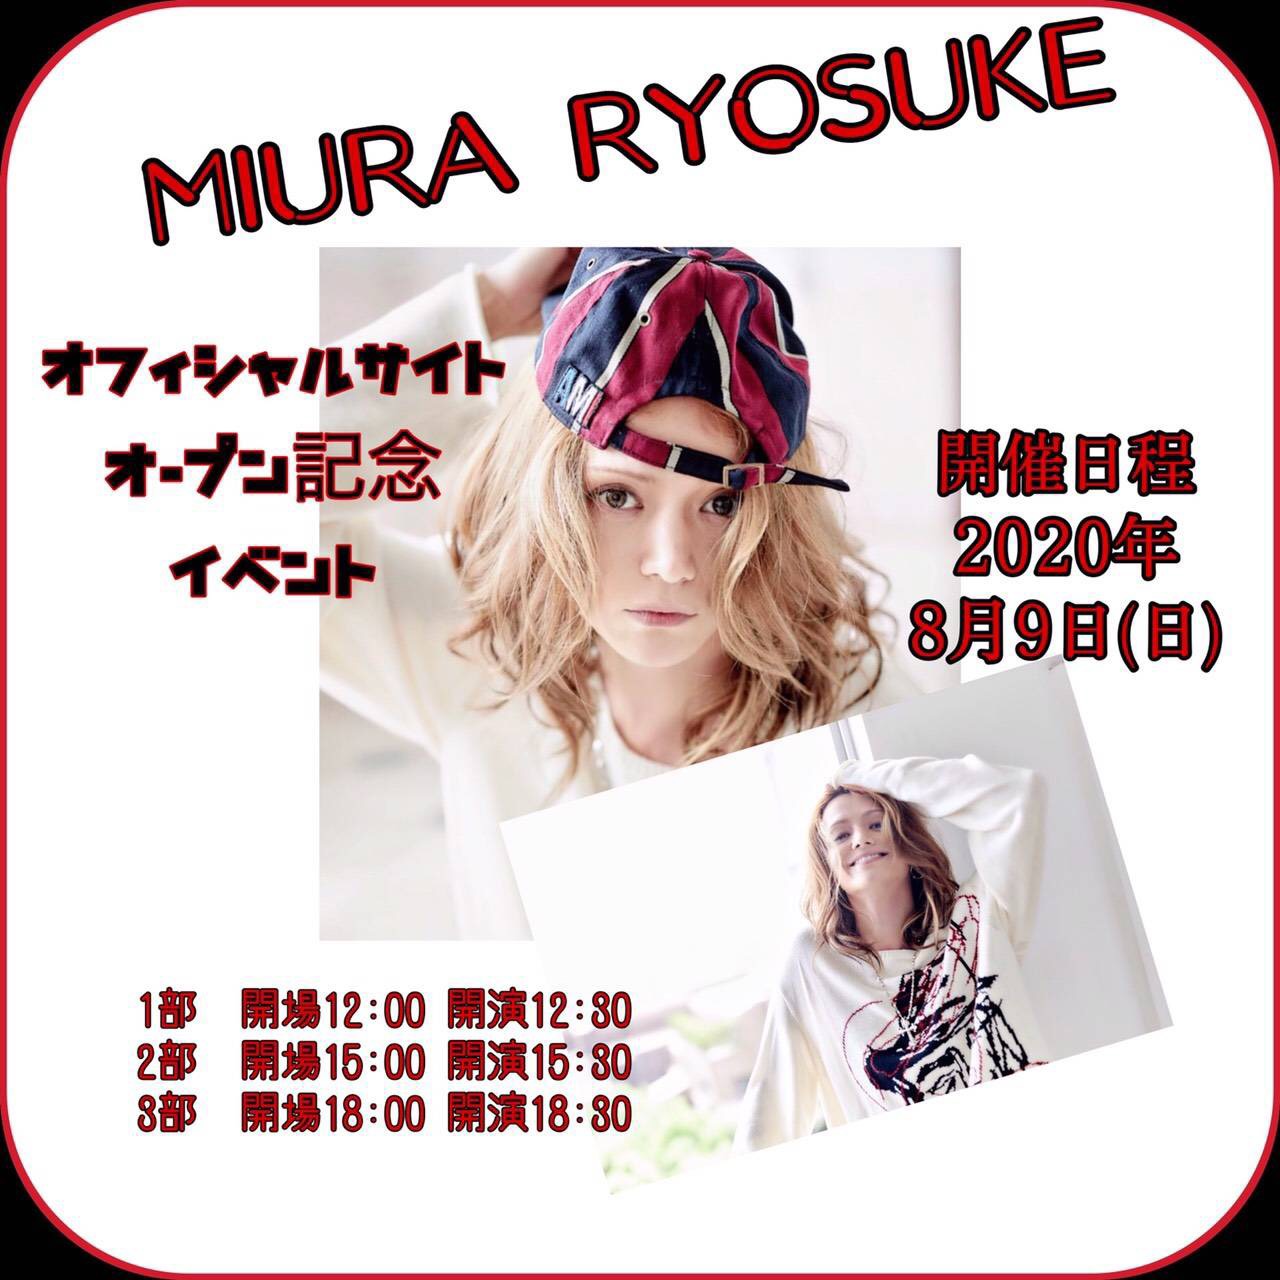 「MIURA RYOSUKE」オフィシャルサイトオープン記念イベント